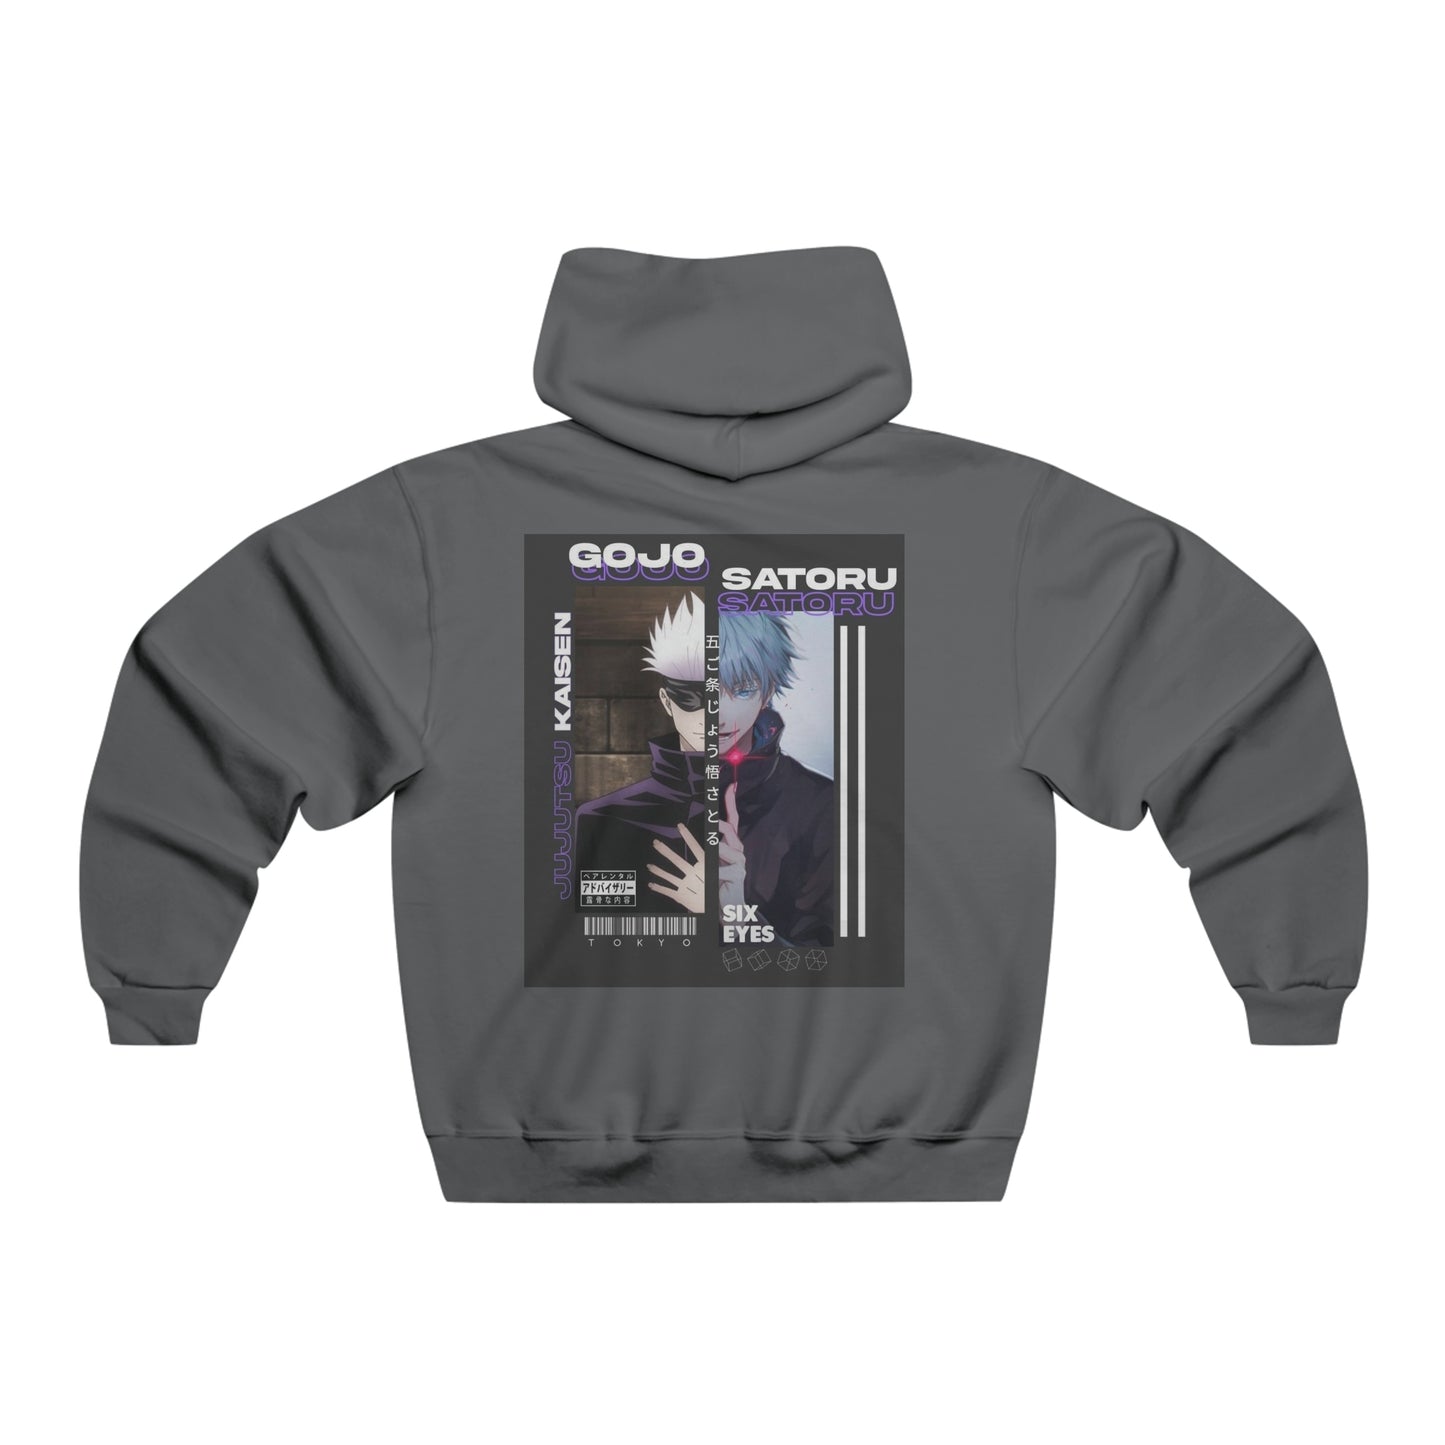 Gojo Satoru Men's NUBLEND® Hooded Sweatshirt